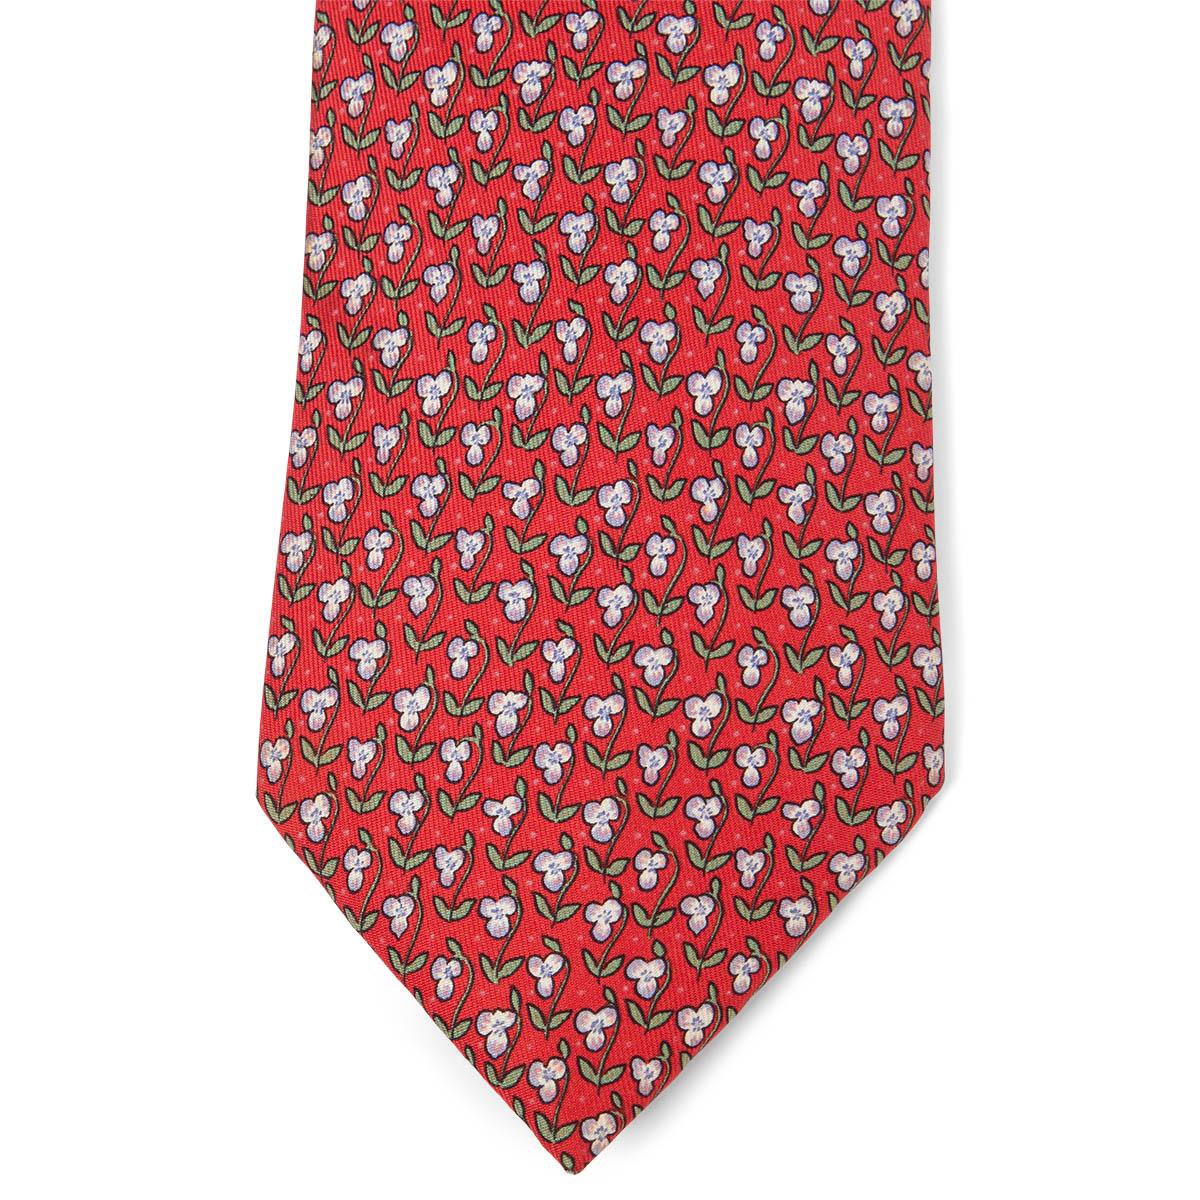 100% authentiques cravates Hermes Floral en twill de soie rouge, vert et blanc (100%). A été porté et est en excellent état. Pas de boîte.

Mesures
Modèle	7845
Longueur	156cm (60.8in)
Point le plus large	9cm (3.54in)
Toutes nos annonces comprennent